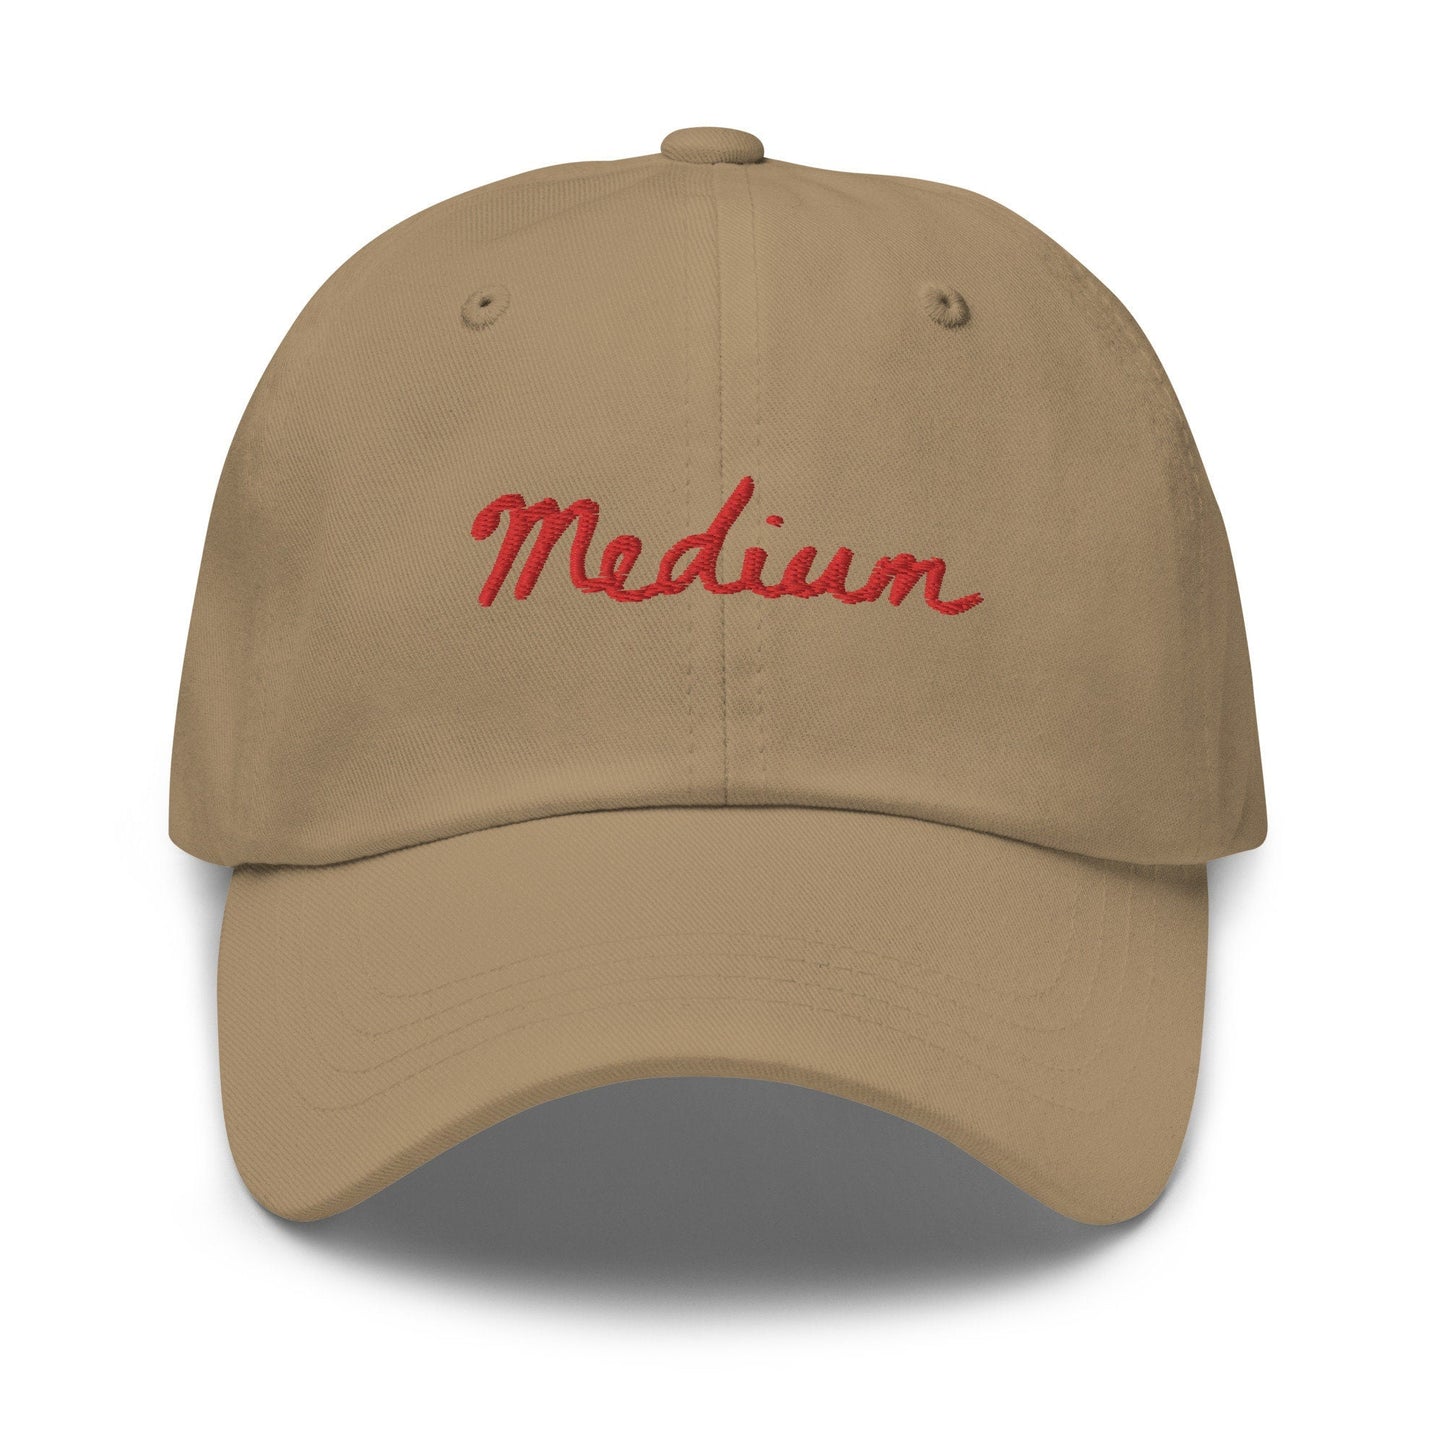 Medium Steak Dad Hat - Steak Doneness - Gift for Dads, bbq fans, steak lovers, carnivores - Minimalist Cotton Embroidered Cap